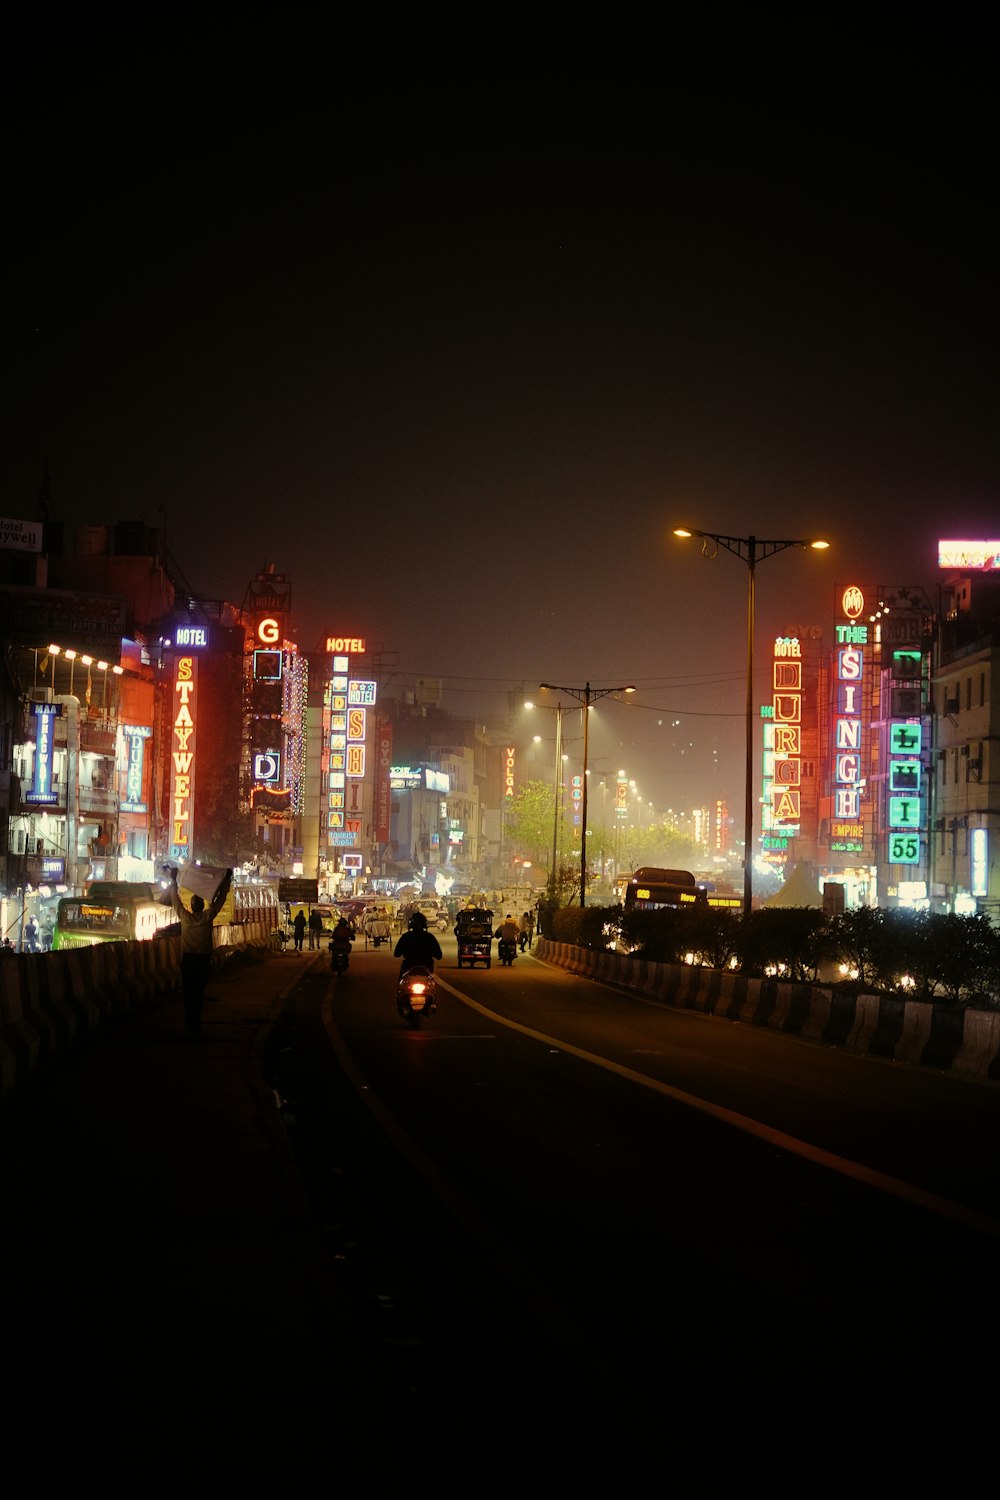 Eine nächtliche Stadtstraße mit hohen Gebäuden, die beleuchtet sind